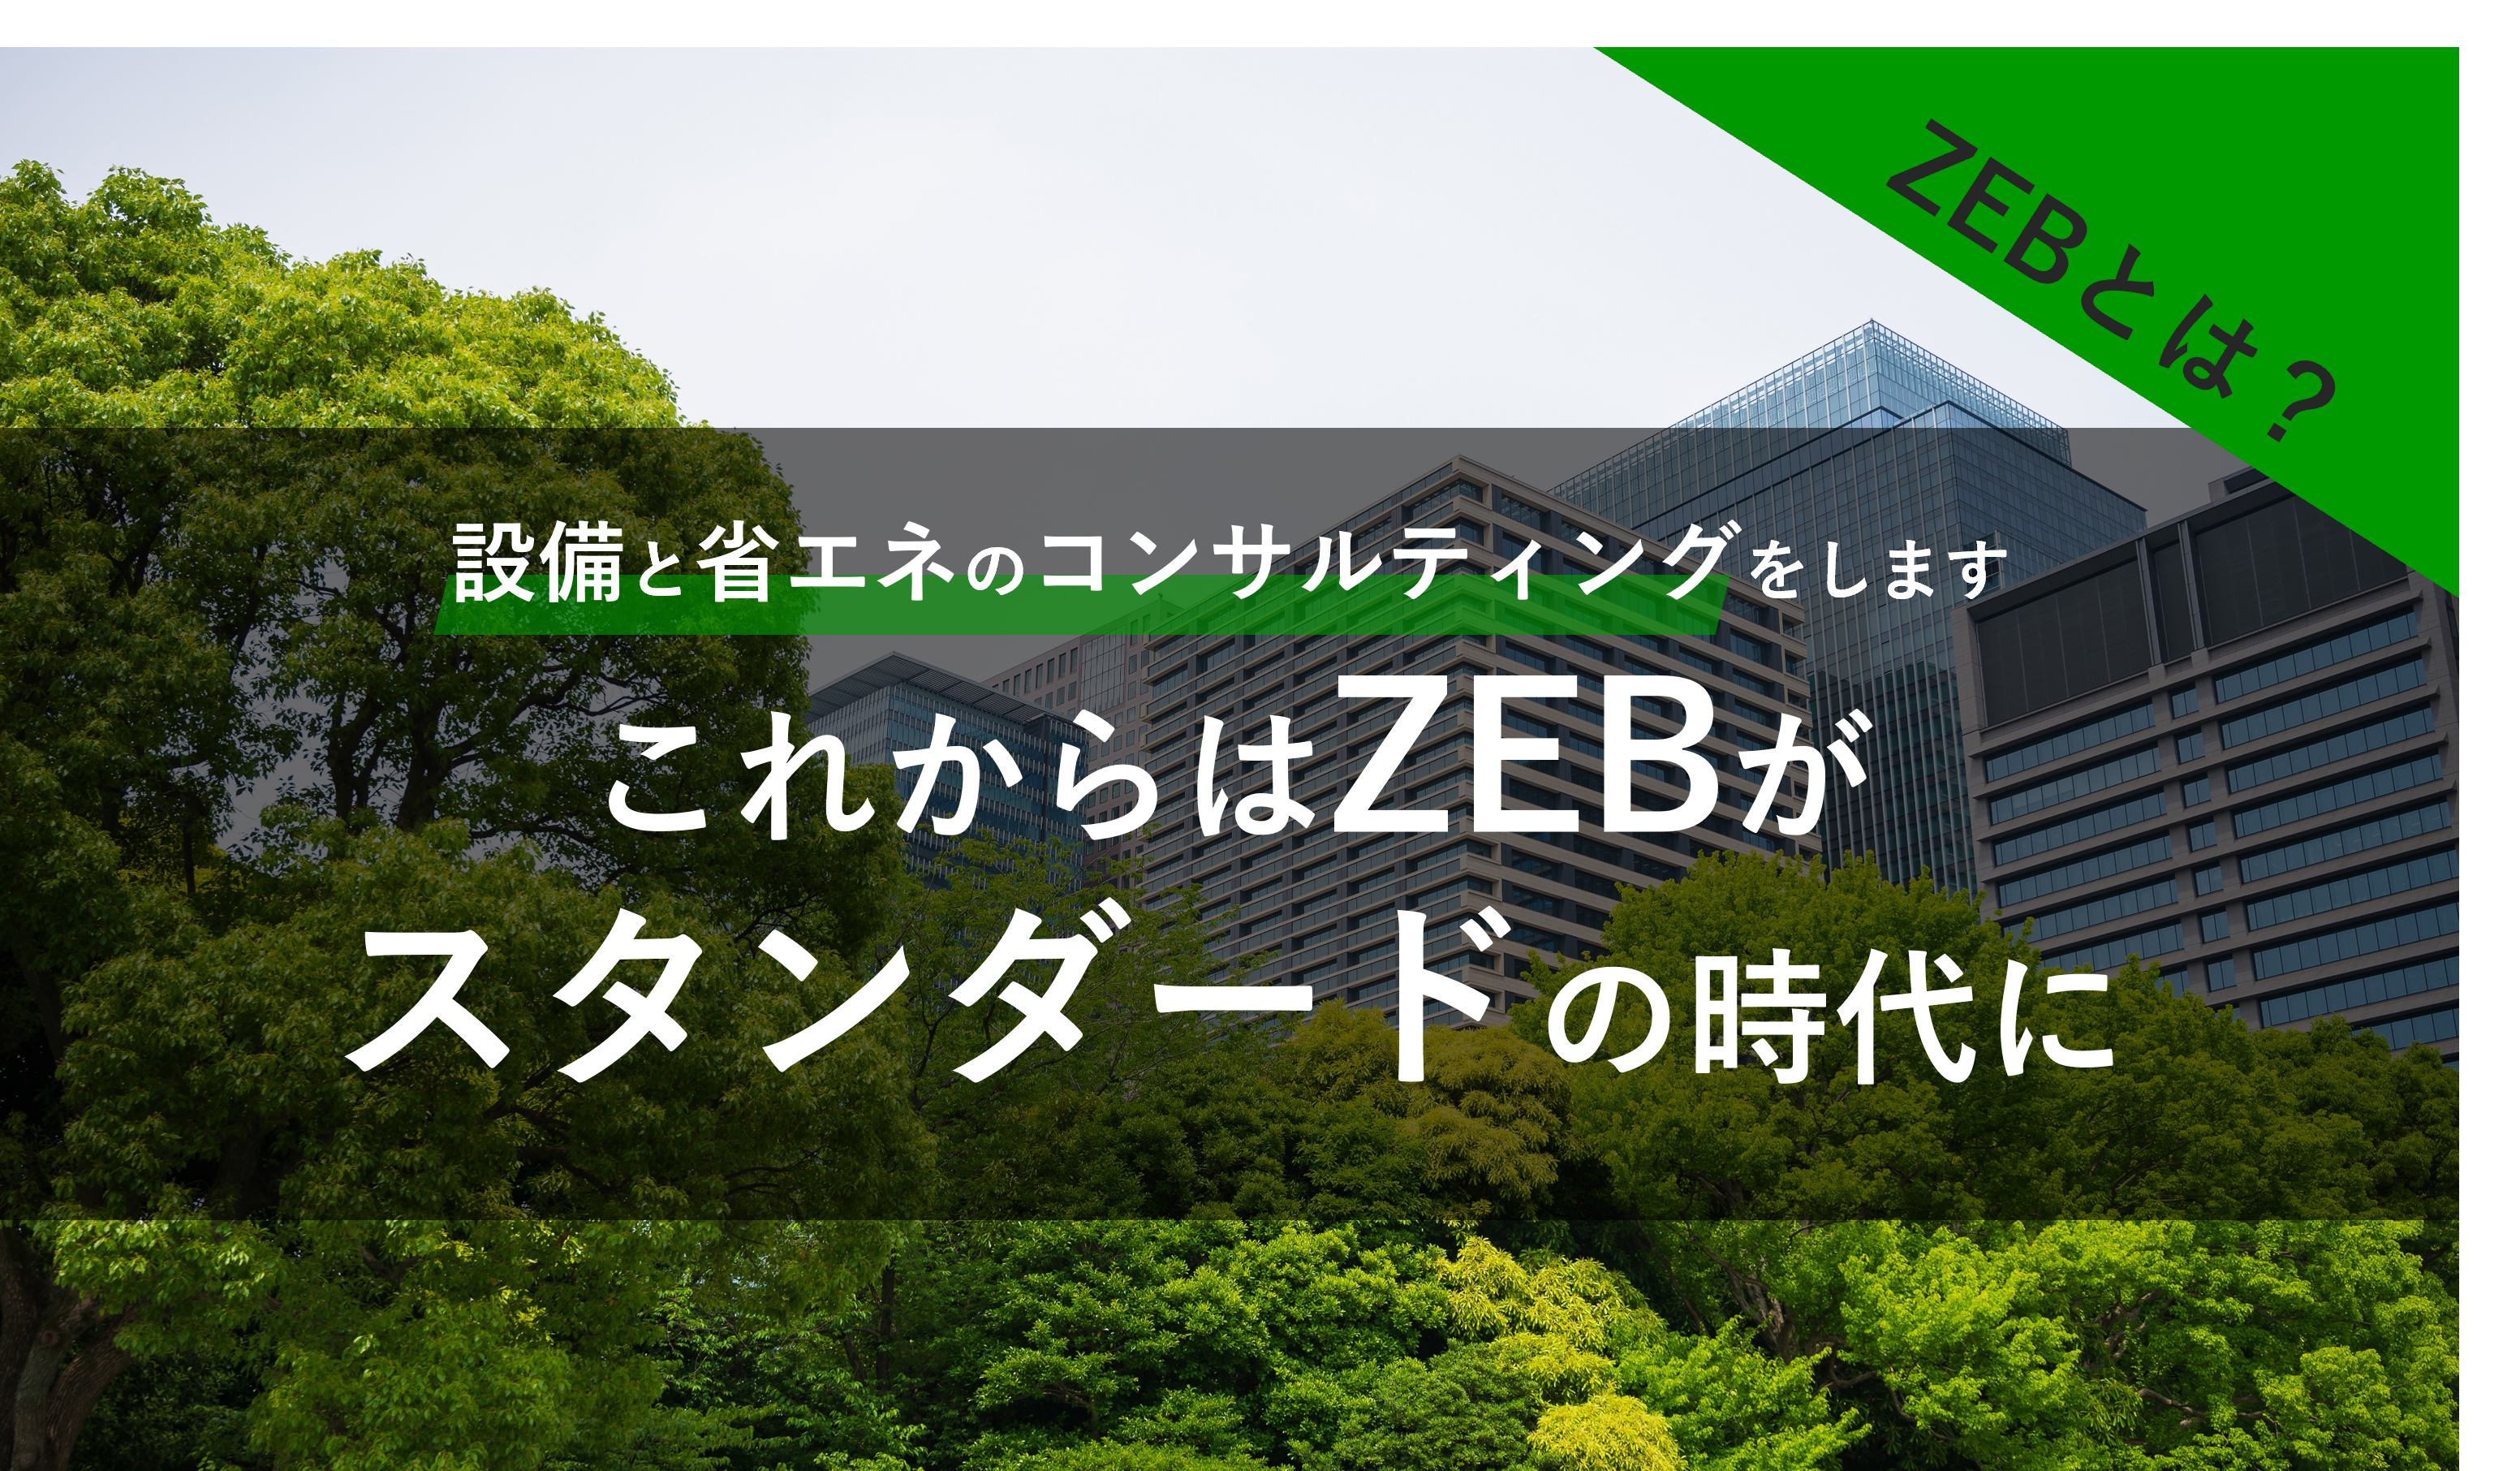 ZEB（Net Zero Energy Building）とは